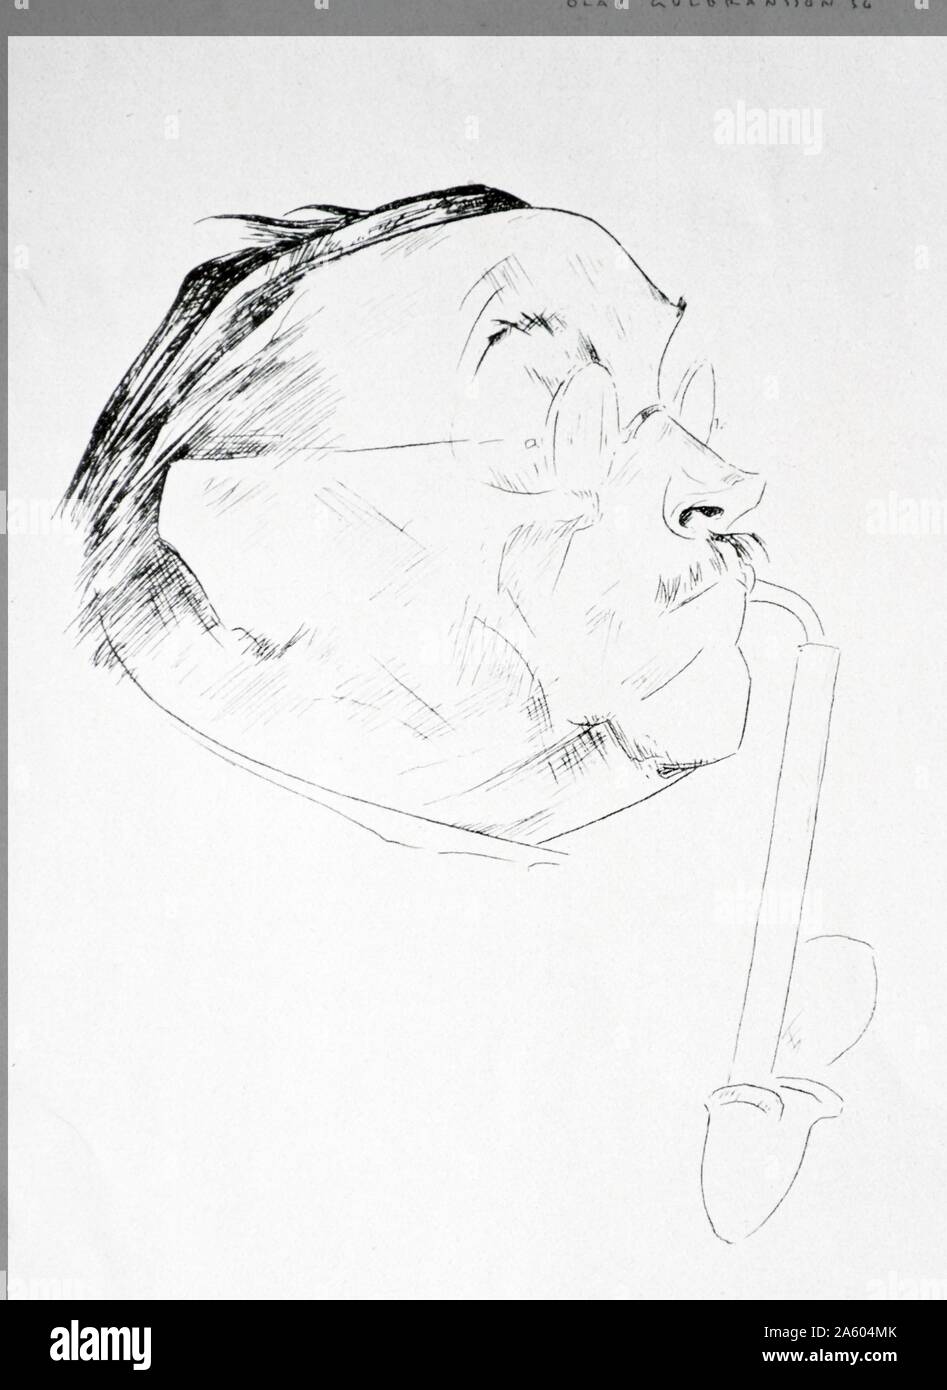 Retrato de Ludwig Thoma por Olaf Gulbransson LEONHARD (1873-1958), artista noruego, pintor y diseñador. Él es probablemente mejor conocido por sus caricaturas e ilustraciones. En 1902 se trasladó a Alemania para trabajar para la revista satírica Simplicissimus en Munich. Gulbransson cooperó activamente con los nazis. Durante la II Guerra Mundial, después de que su propio país fue ocupado por los alemanes, él produjo caricaturas contra los aliados, en particular en contra de Winston Churchill. En 1941 fue miembro honorario de la sociedad de artistas de Berlín y en 1942 de la Academia de Bellas Artes de Viena. 1937 Foto de stock